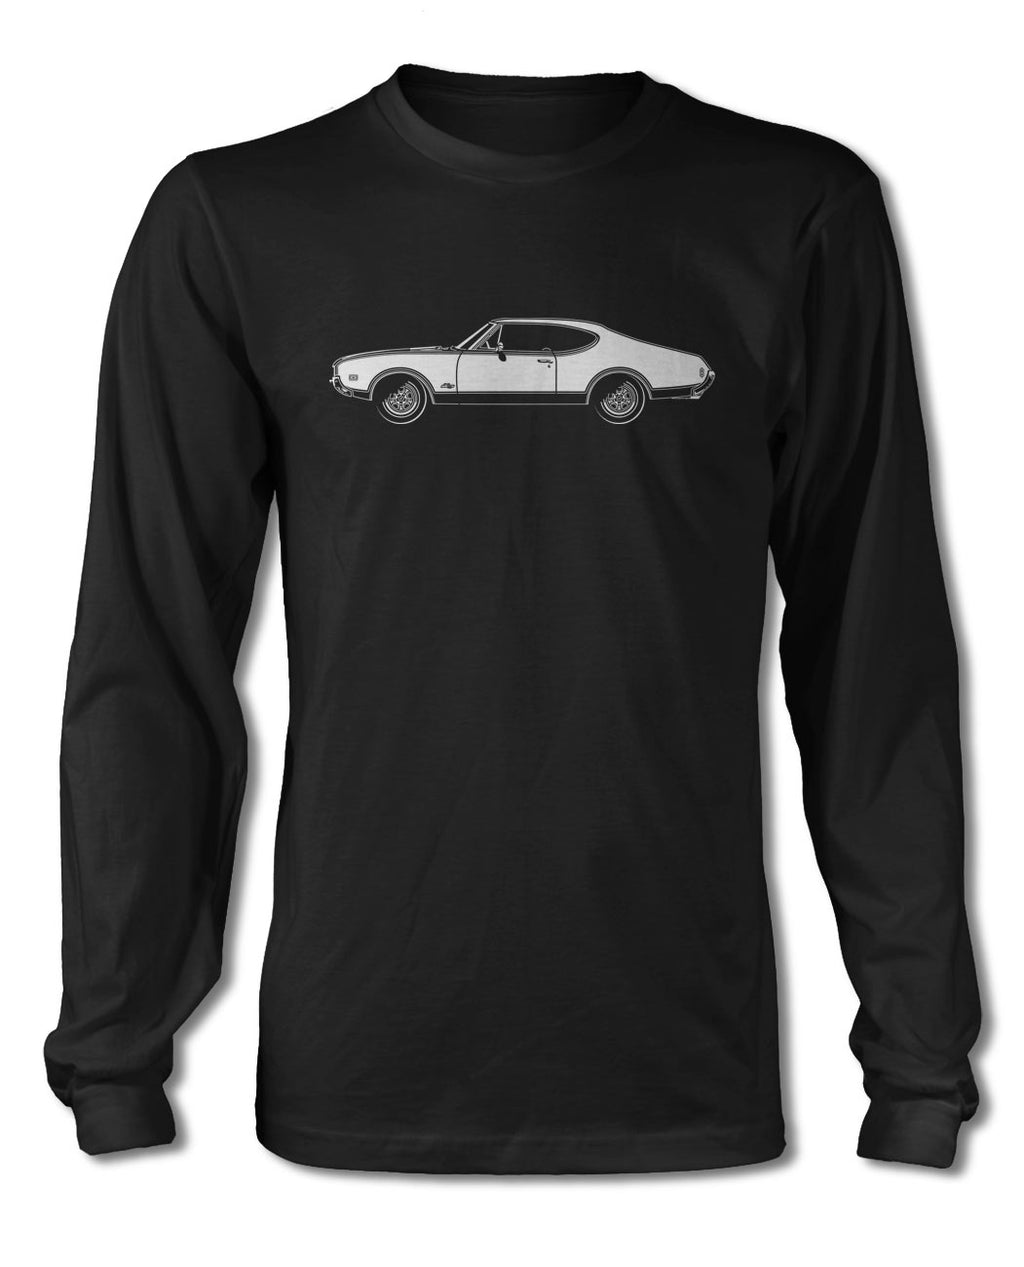 1968 Oldsmobile Cutlass 4-4-2 Hurst T-Shirt - Long Sleeves - Side View